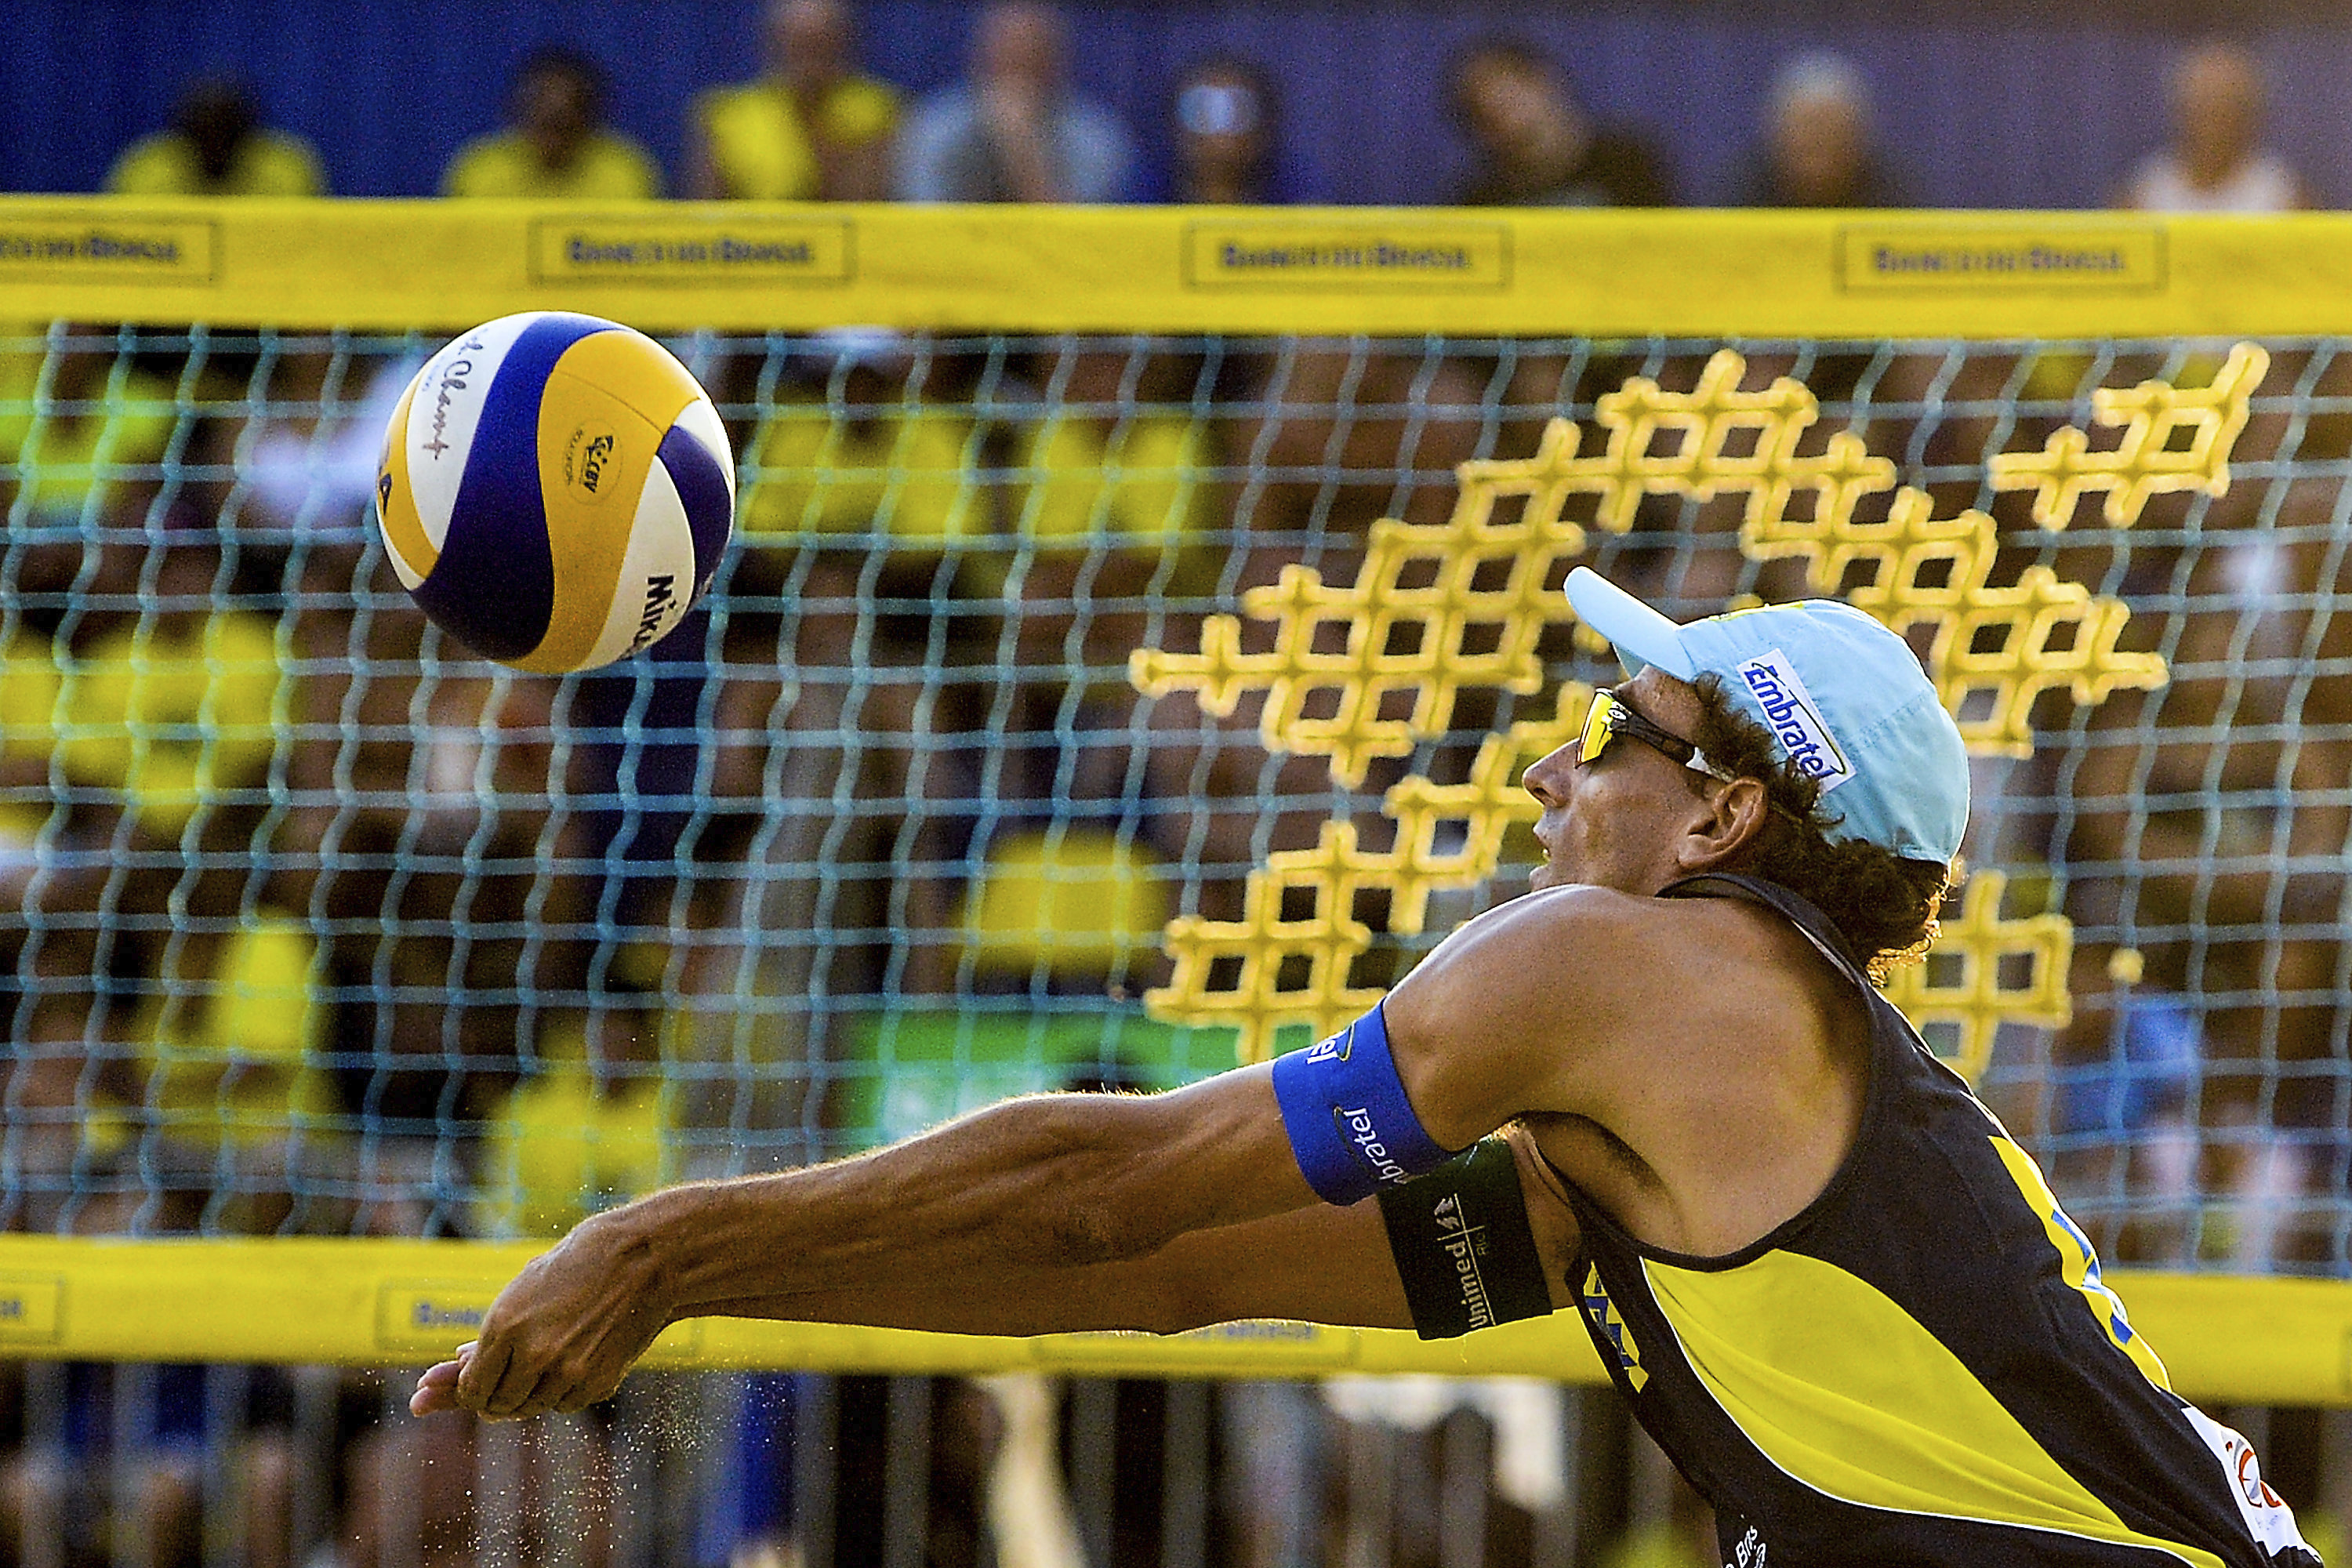 Vôlei: o que é, regras, história e o esporte no Brasil - Significados